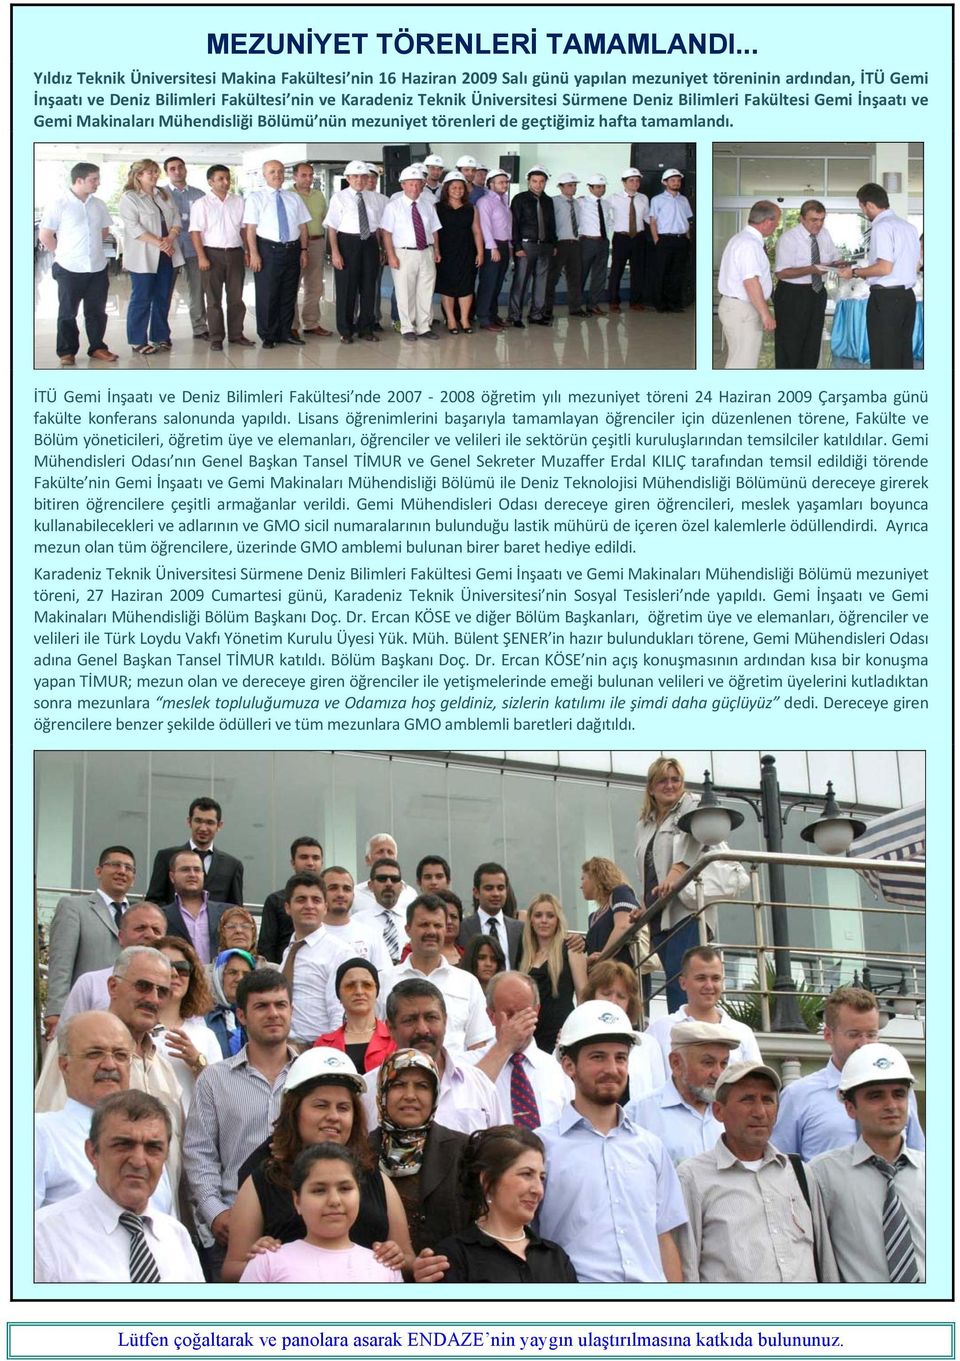 Sürmene Deniz Bilimleri Fakültesi Gemi İnşaatı ve Gemi Makinaları Mühendisliği Bölümü nün mezuniyet törenleri de geçtiğimiz hafta tamamlandı.